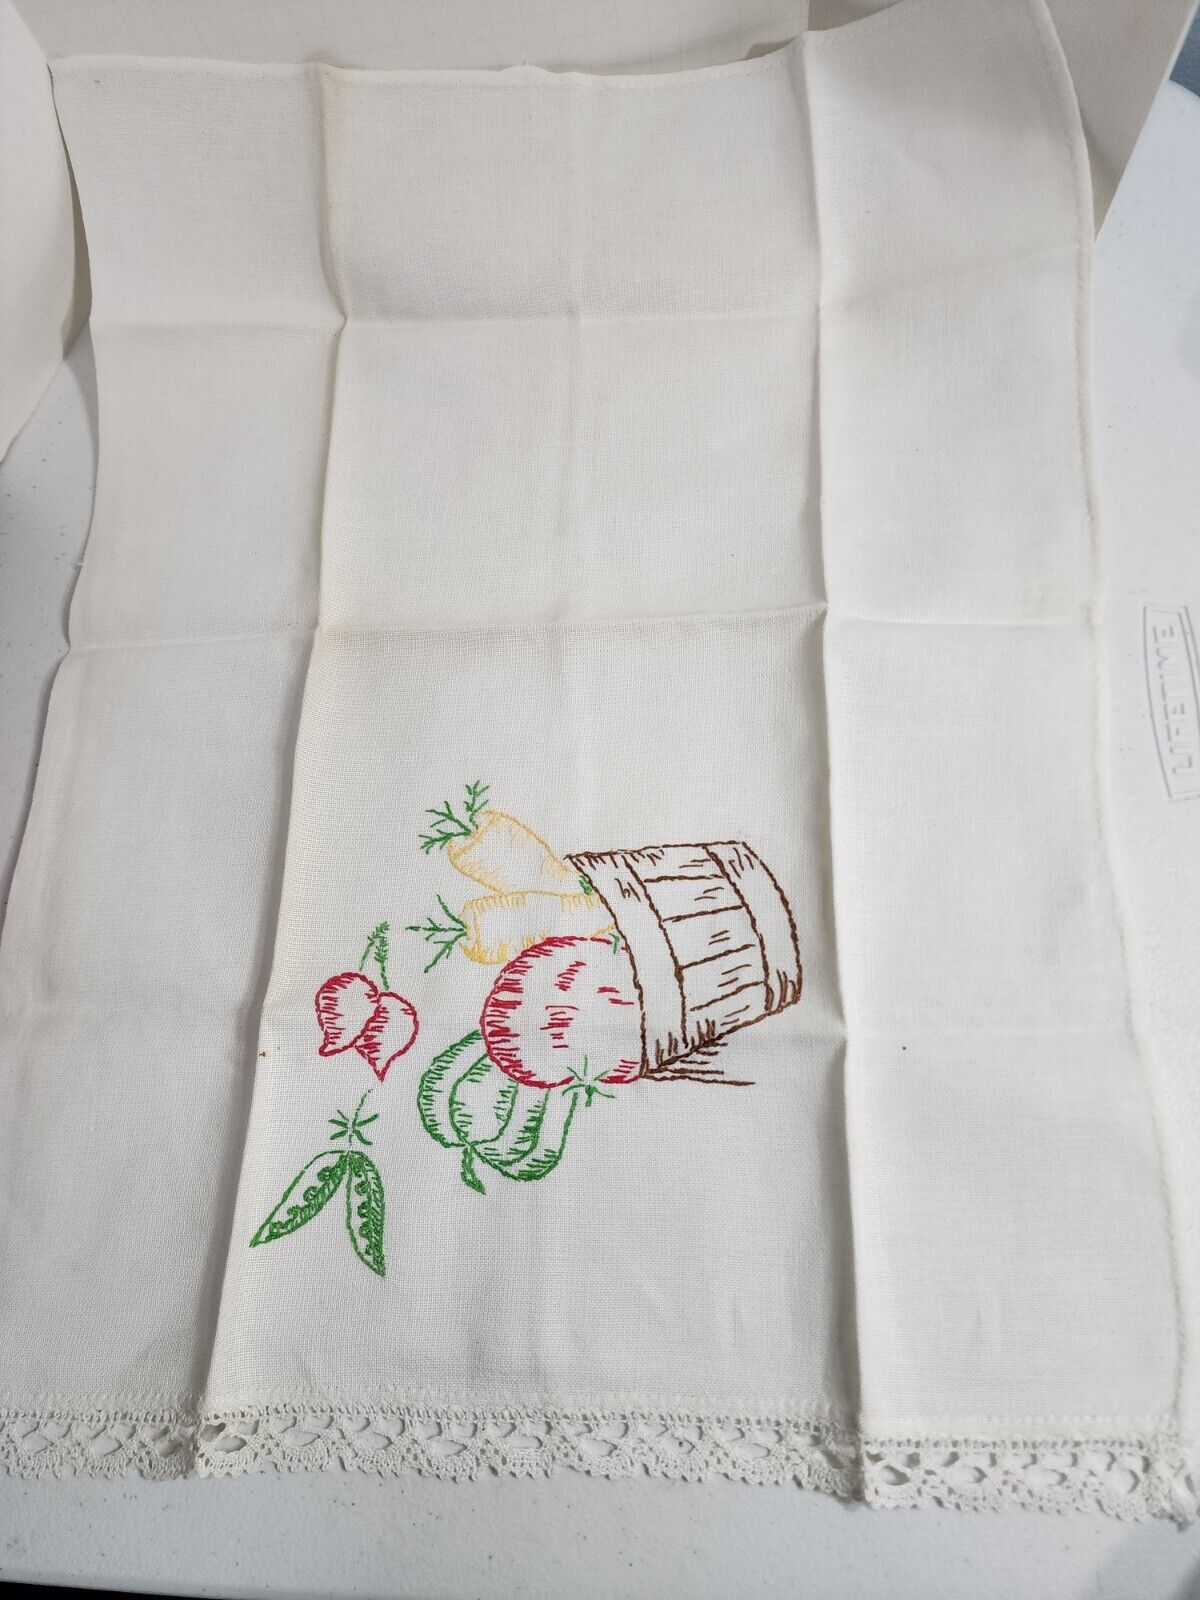 Vintage Embroidered Hand Dish Towel Lace Trim Basket Of Vegetables